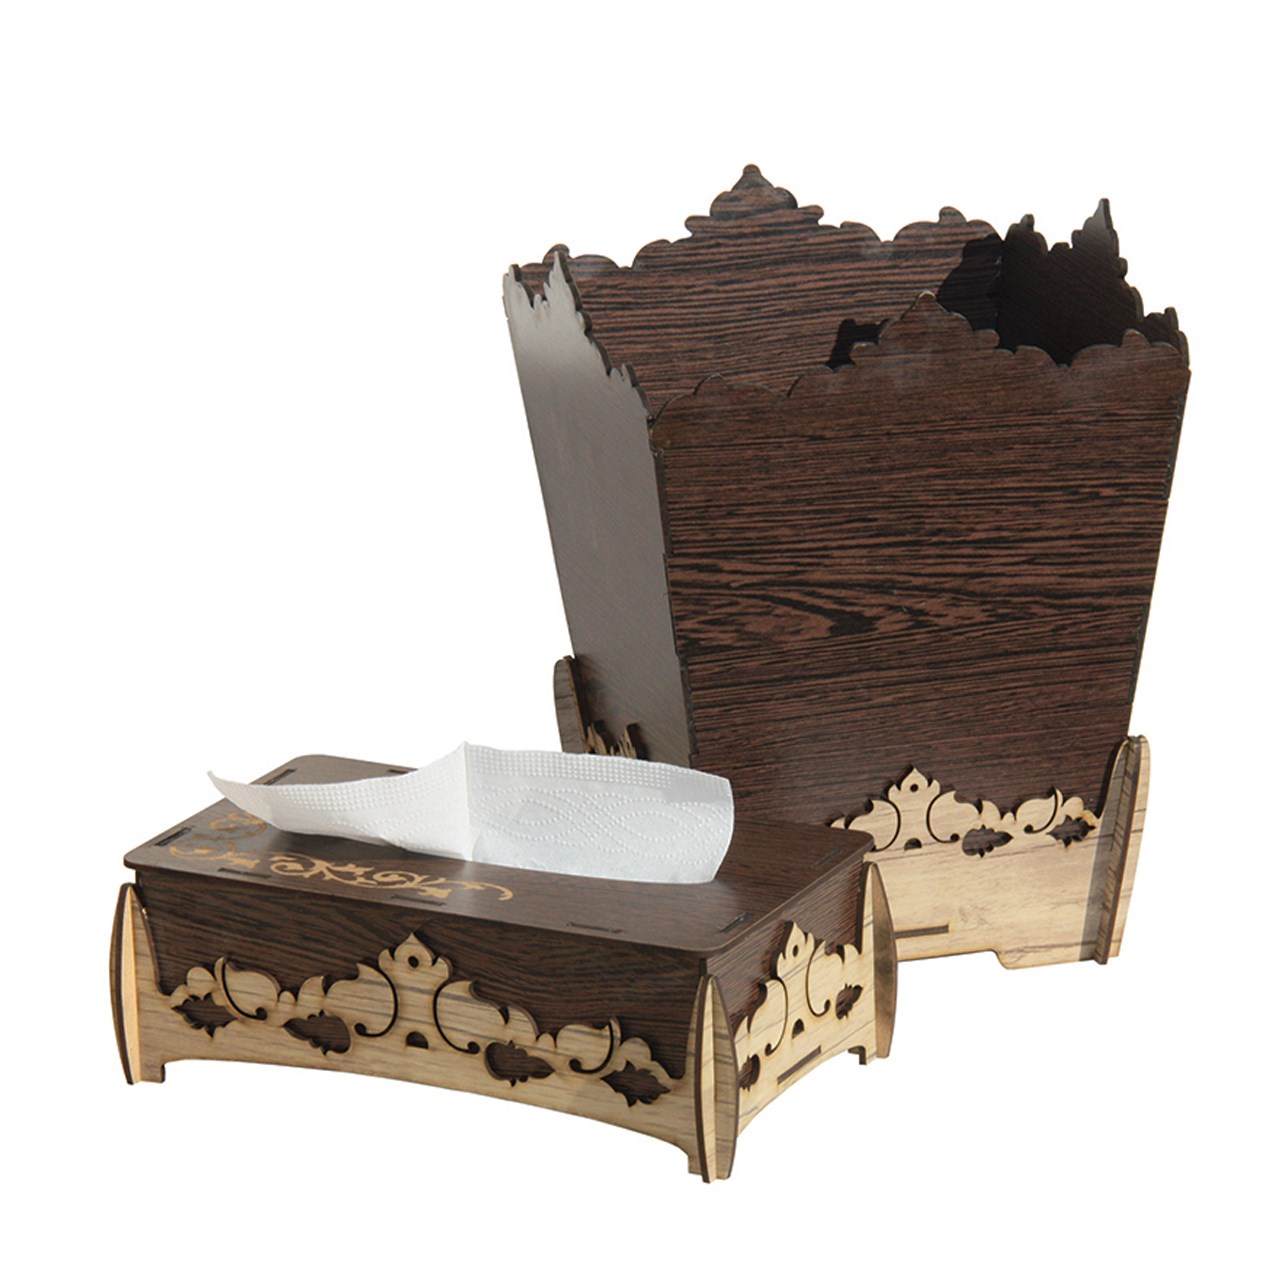 جعبه دستمال کاغذی و سطل زباله کارا دیزاین مدل g01